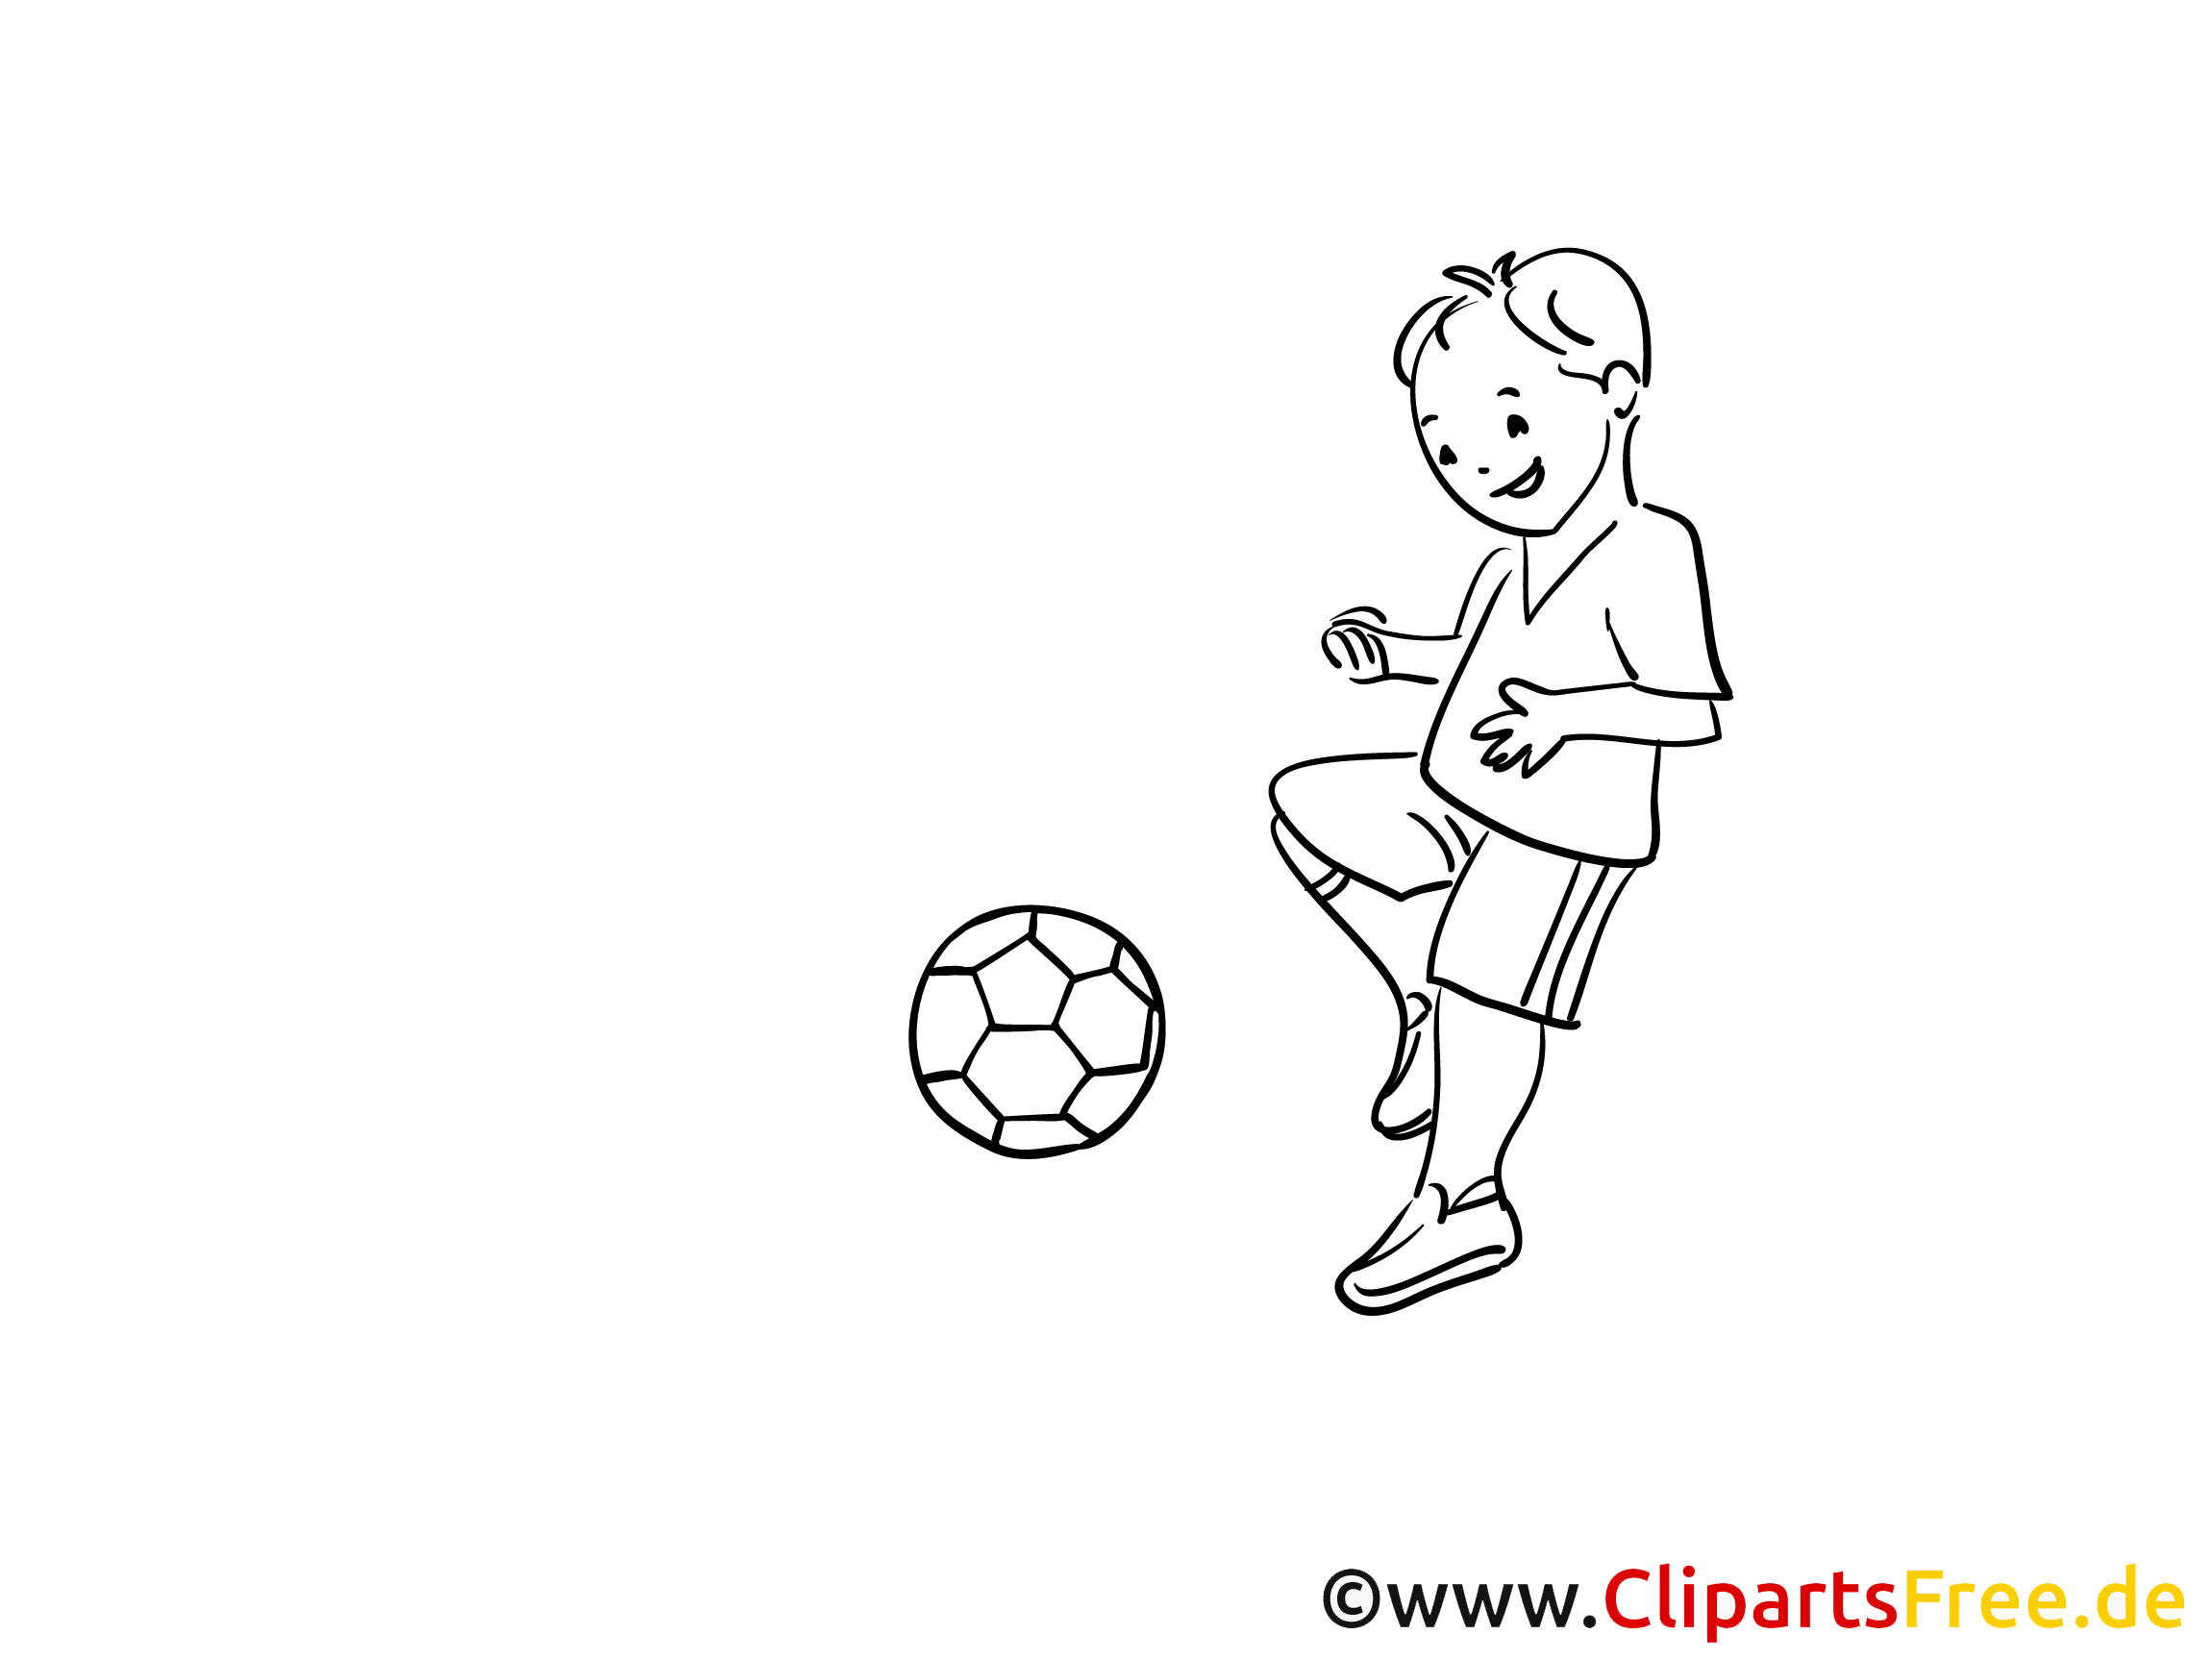 Junge-Fussballspielr Ausmalbild